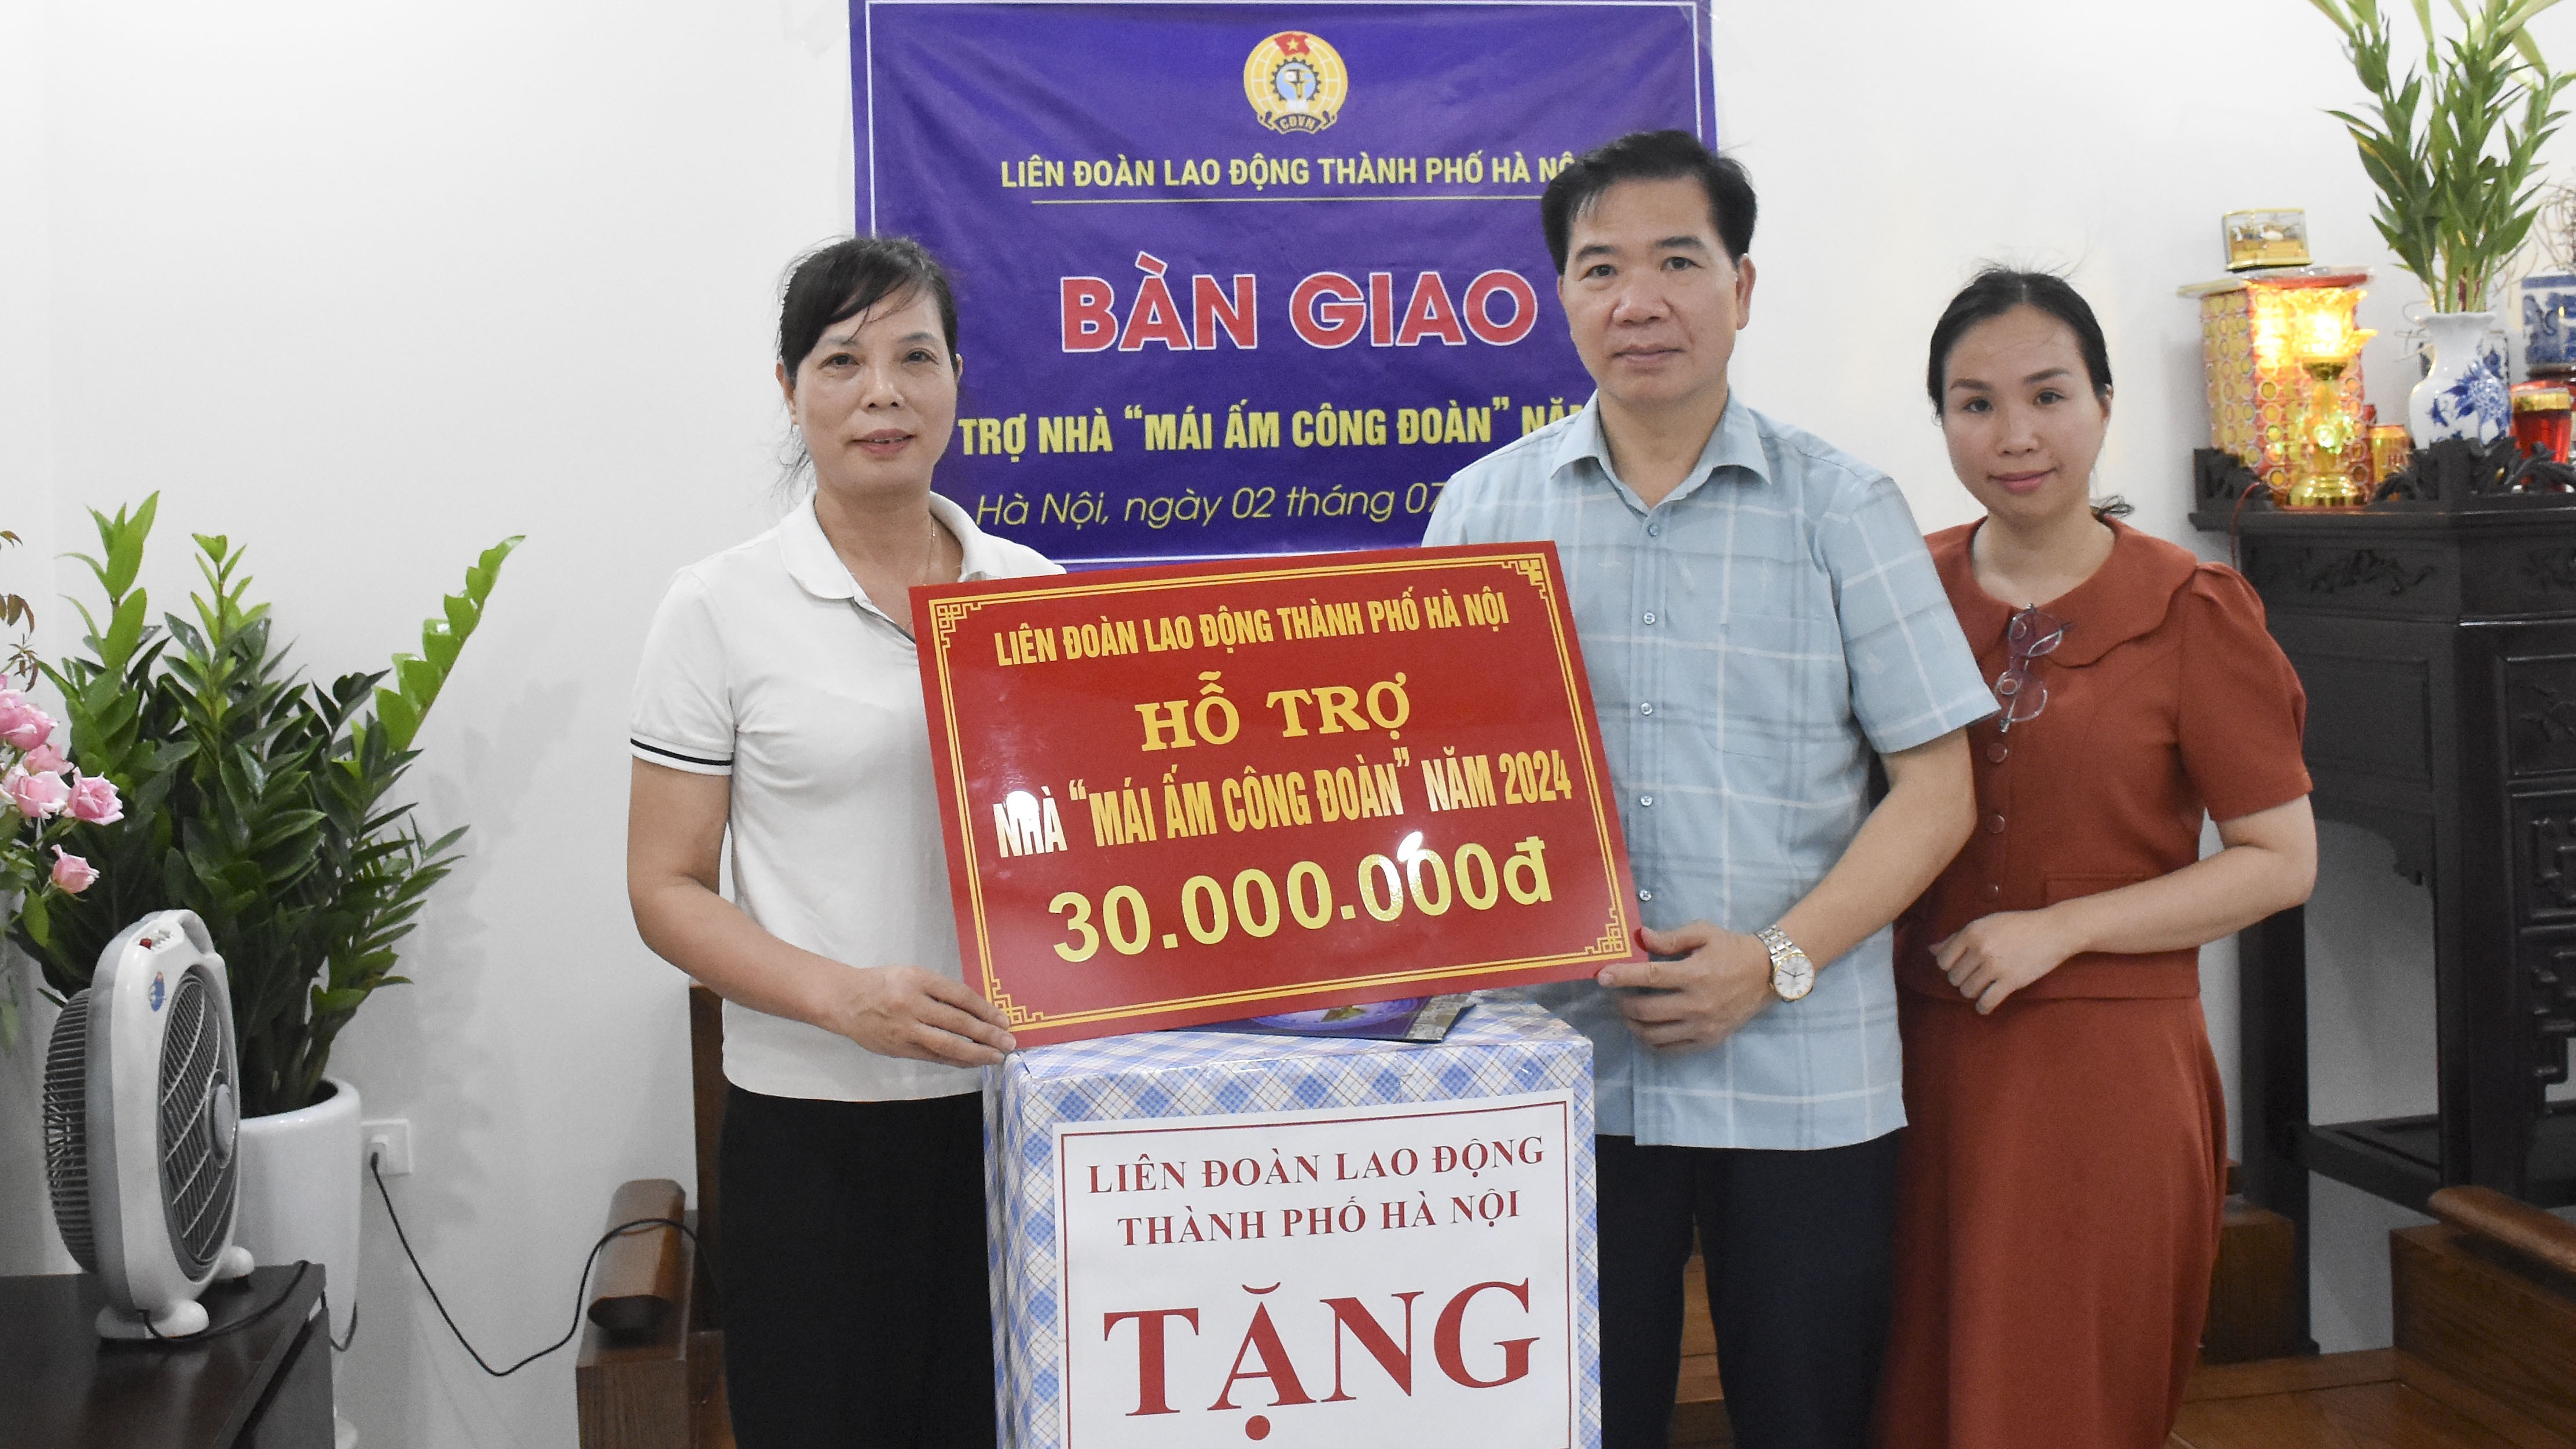 Đoàn viên công đoàn quận Ba Đình nhận hỗ trợ kinh phí sửa chữa "Mái ấm Công đoàn"